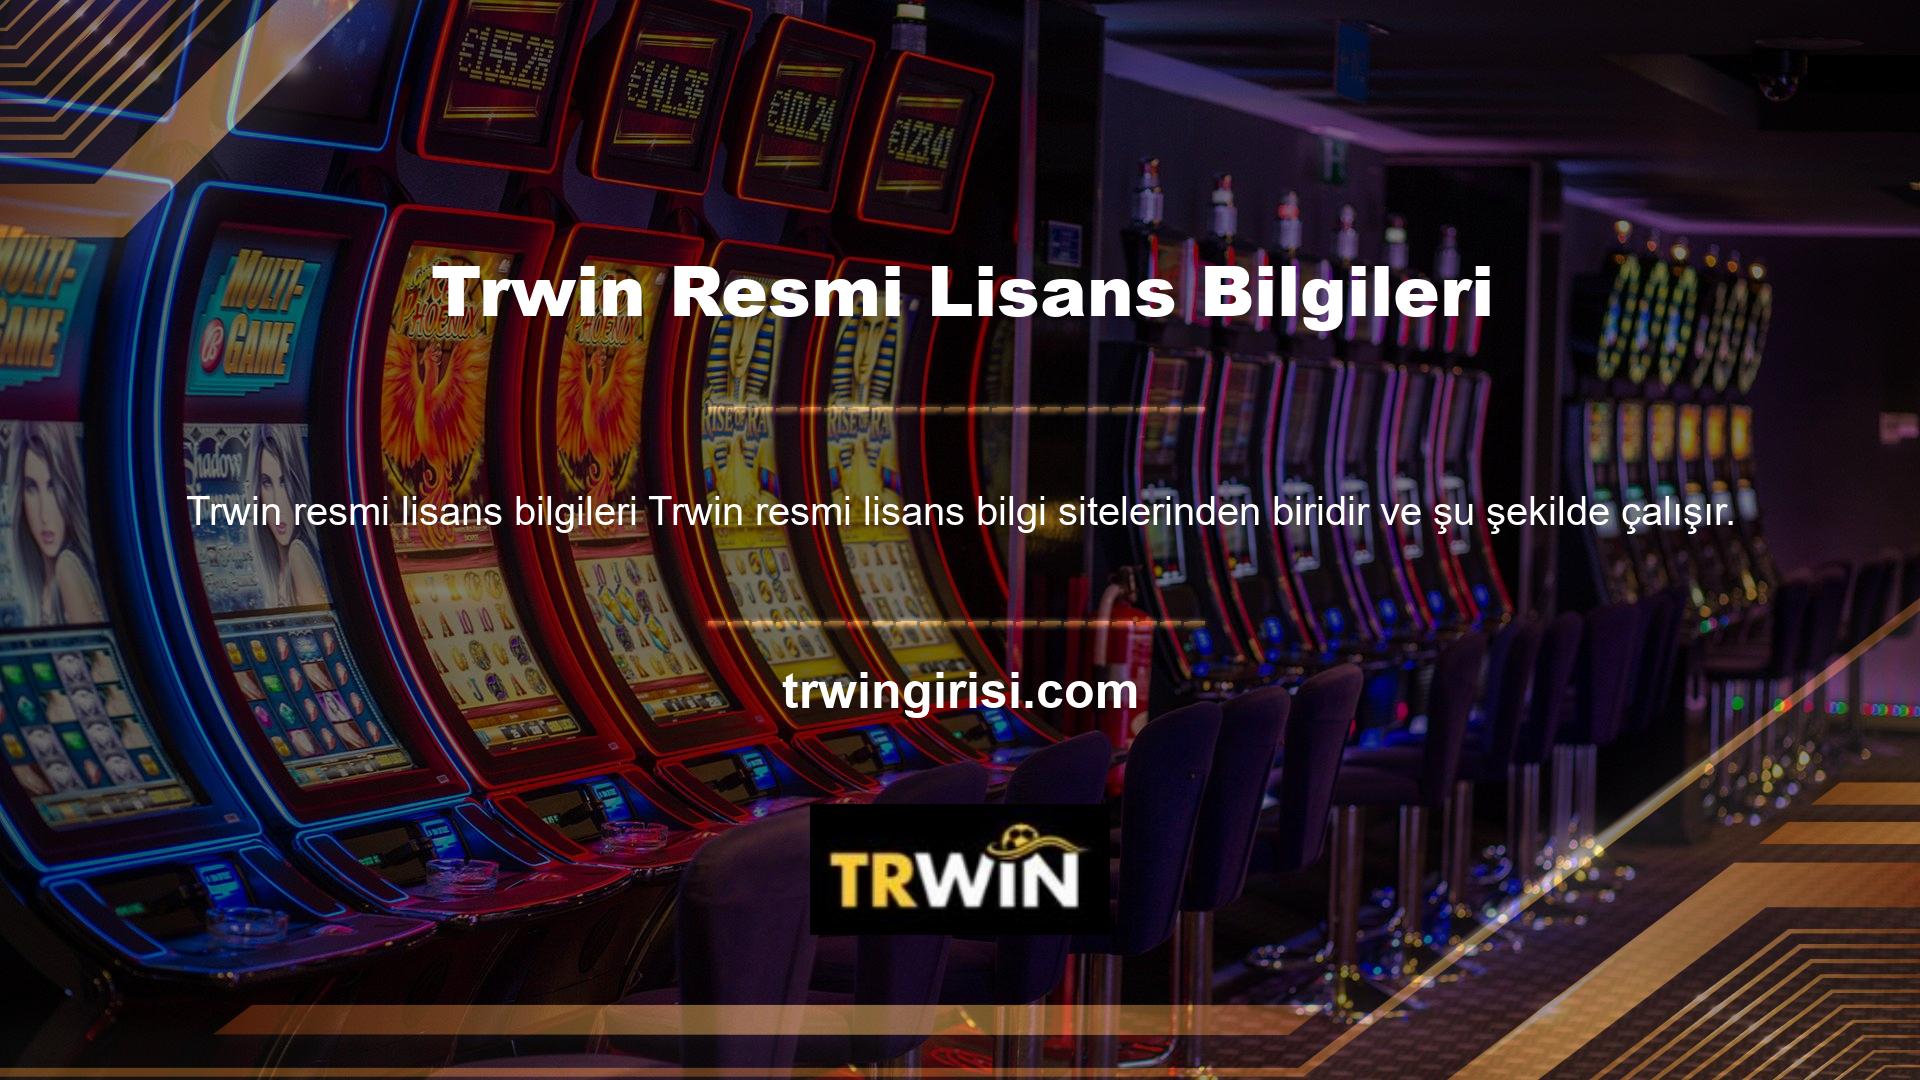 Bu bilgilere dayanarak resmi lisans bilgilerinin yer aldığı Trwin web sitesi, kullanıcılarına hukuk ve casino hizmetleri sunmaktadır